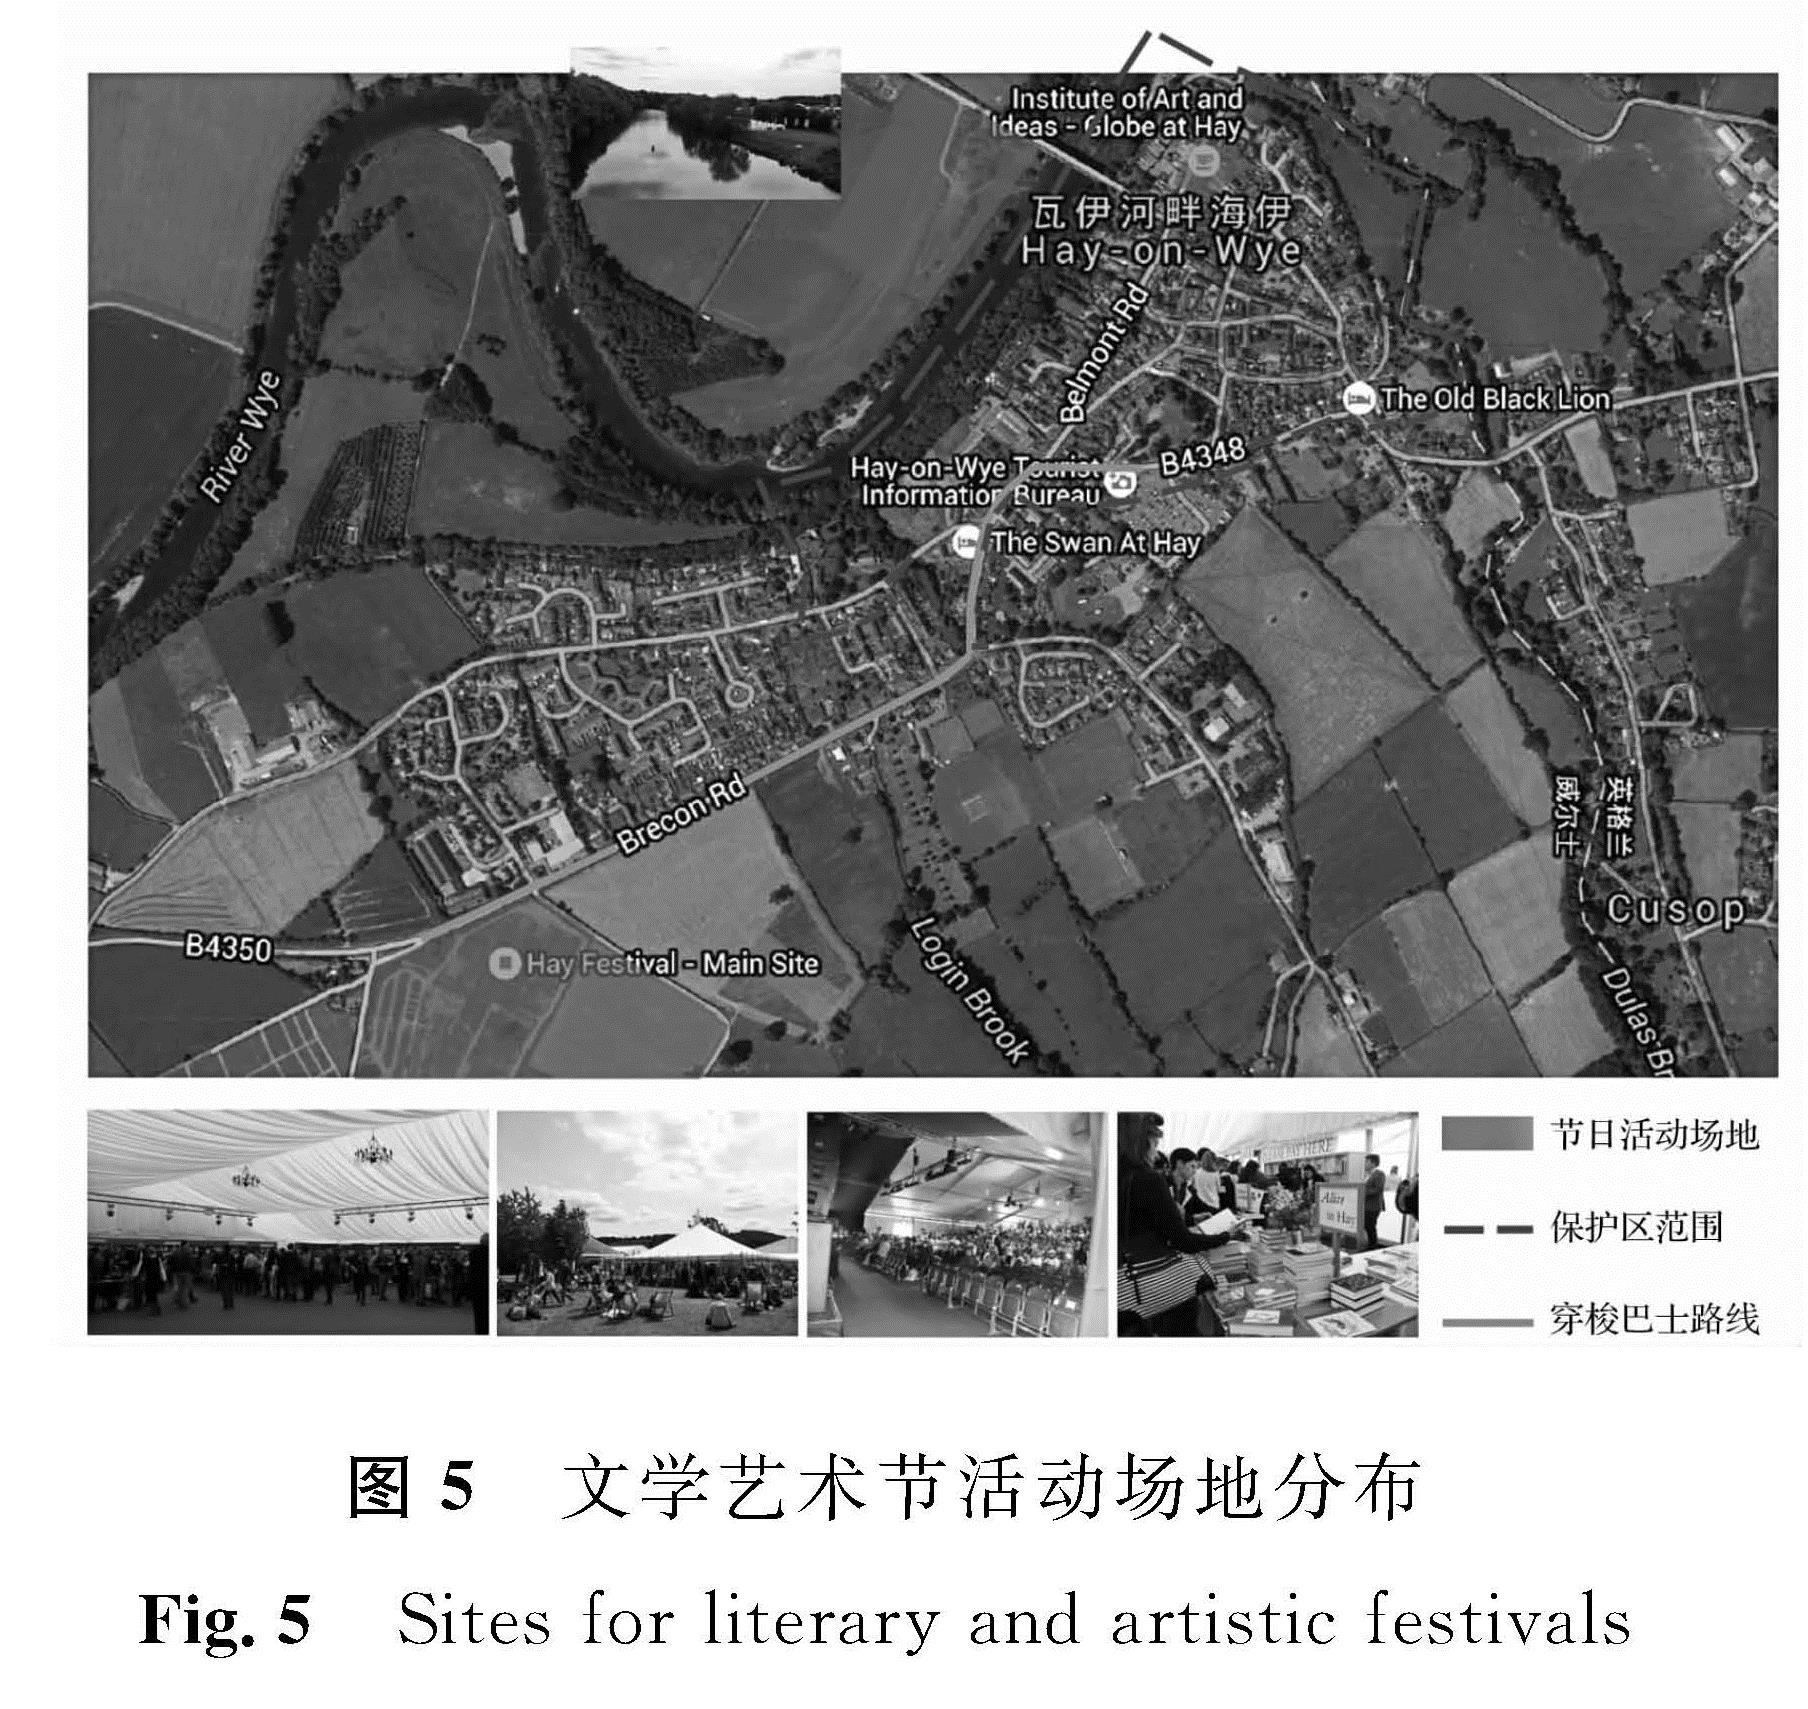 图5 文学艺术节活动场地分布<br/>Fig.5 Sites for literary and artistic festivals